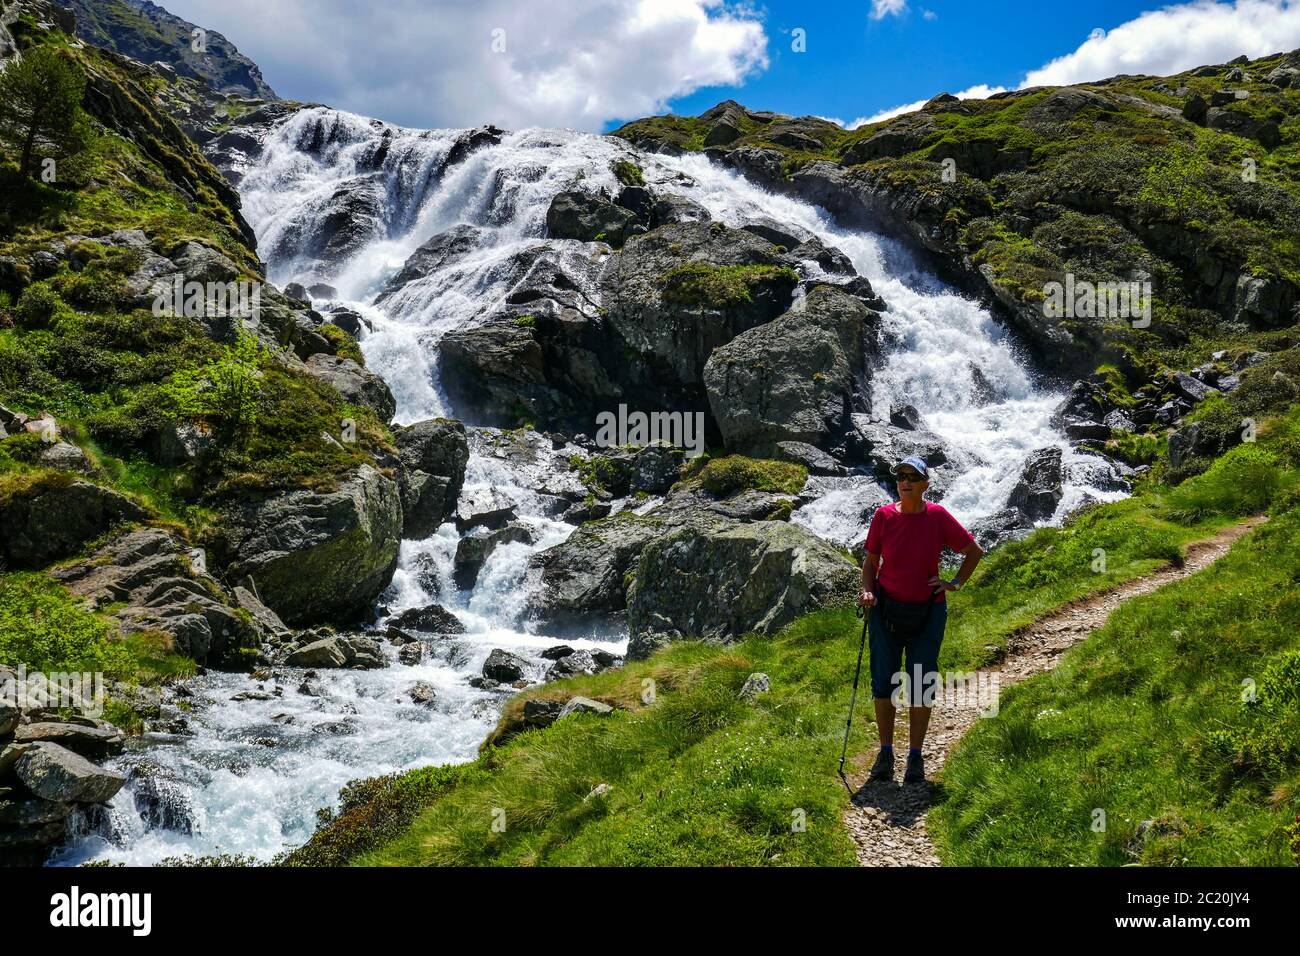 Einsame weibliche Wanderer mit Bach mit Kaskaden fließt durch das Soulcem Tal in den französischen Pyrenäen, Ariege Region, Frankreich, Pyrenäen Berge Stockfoto